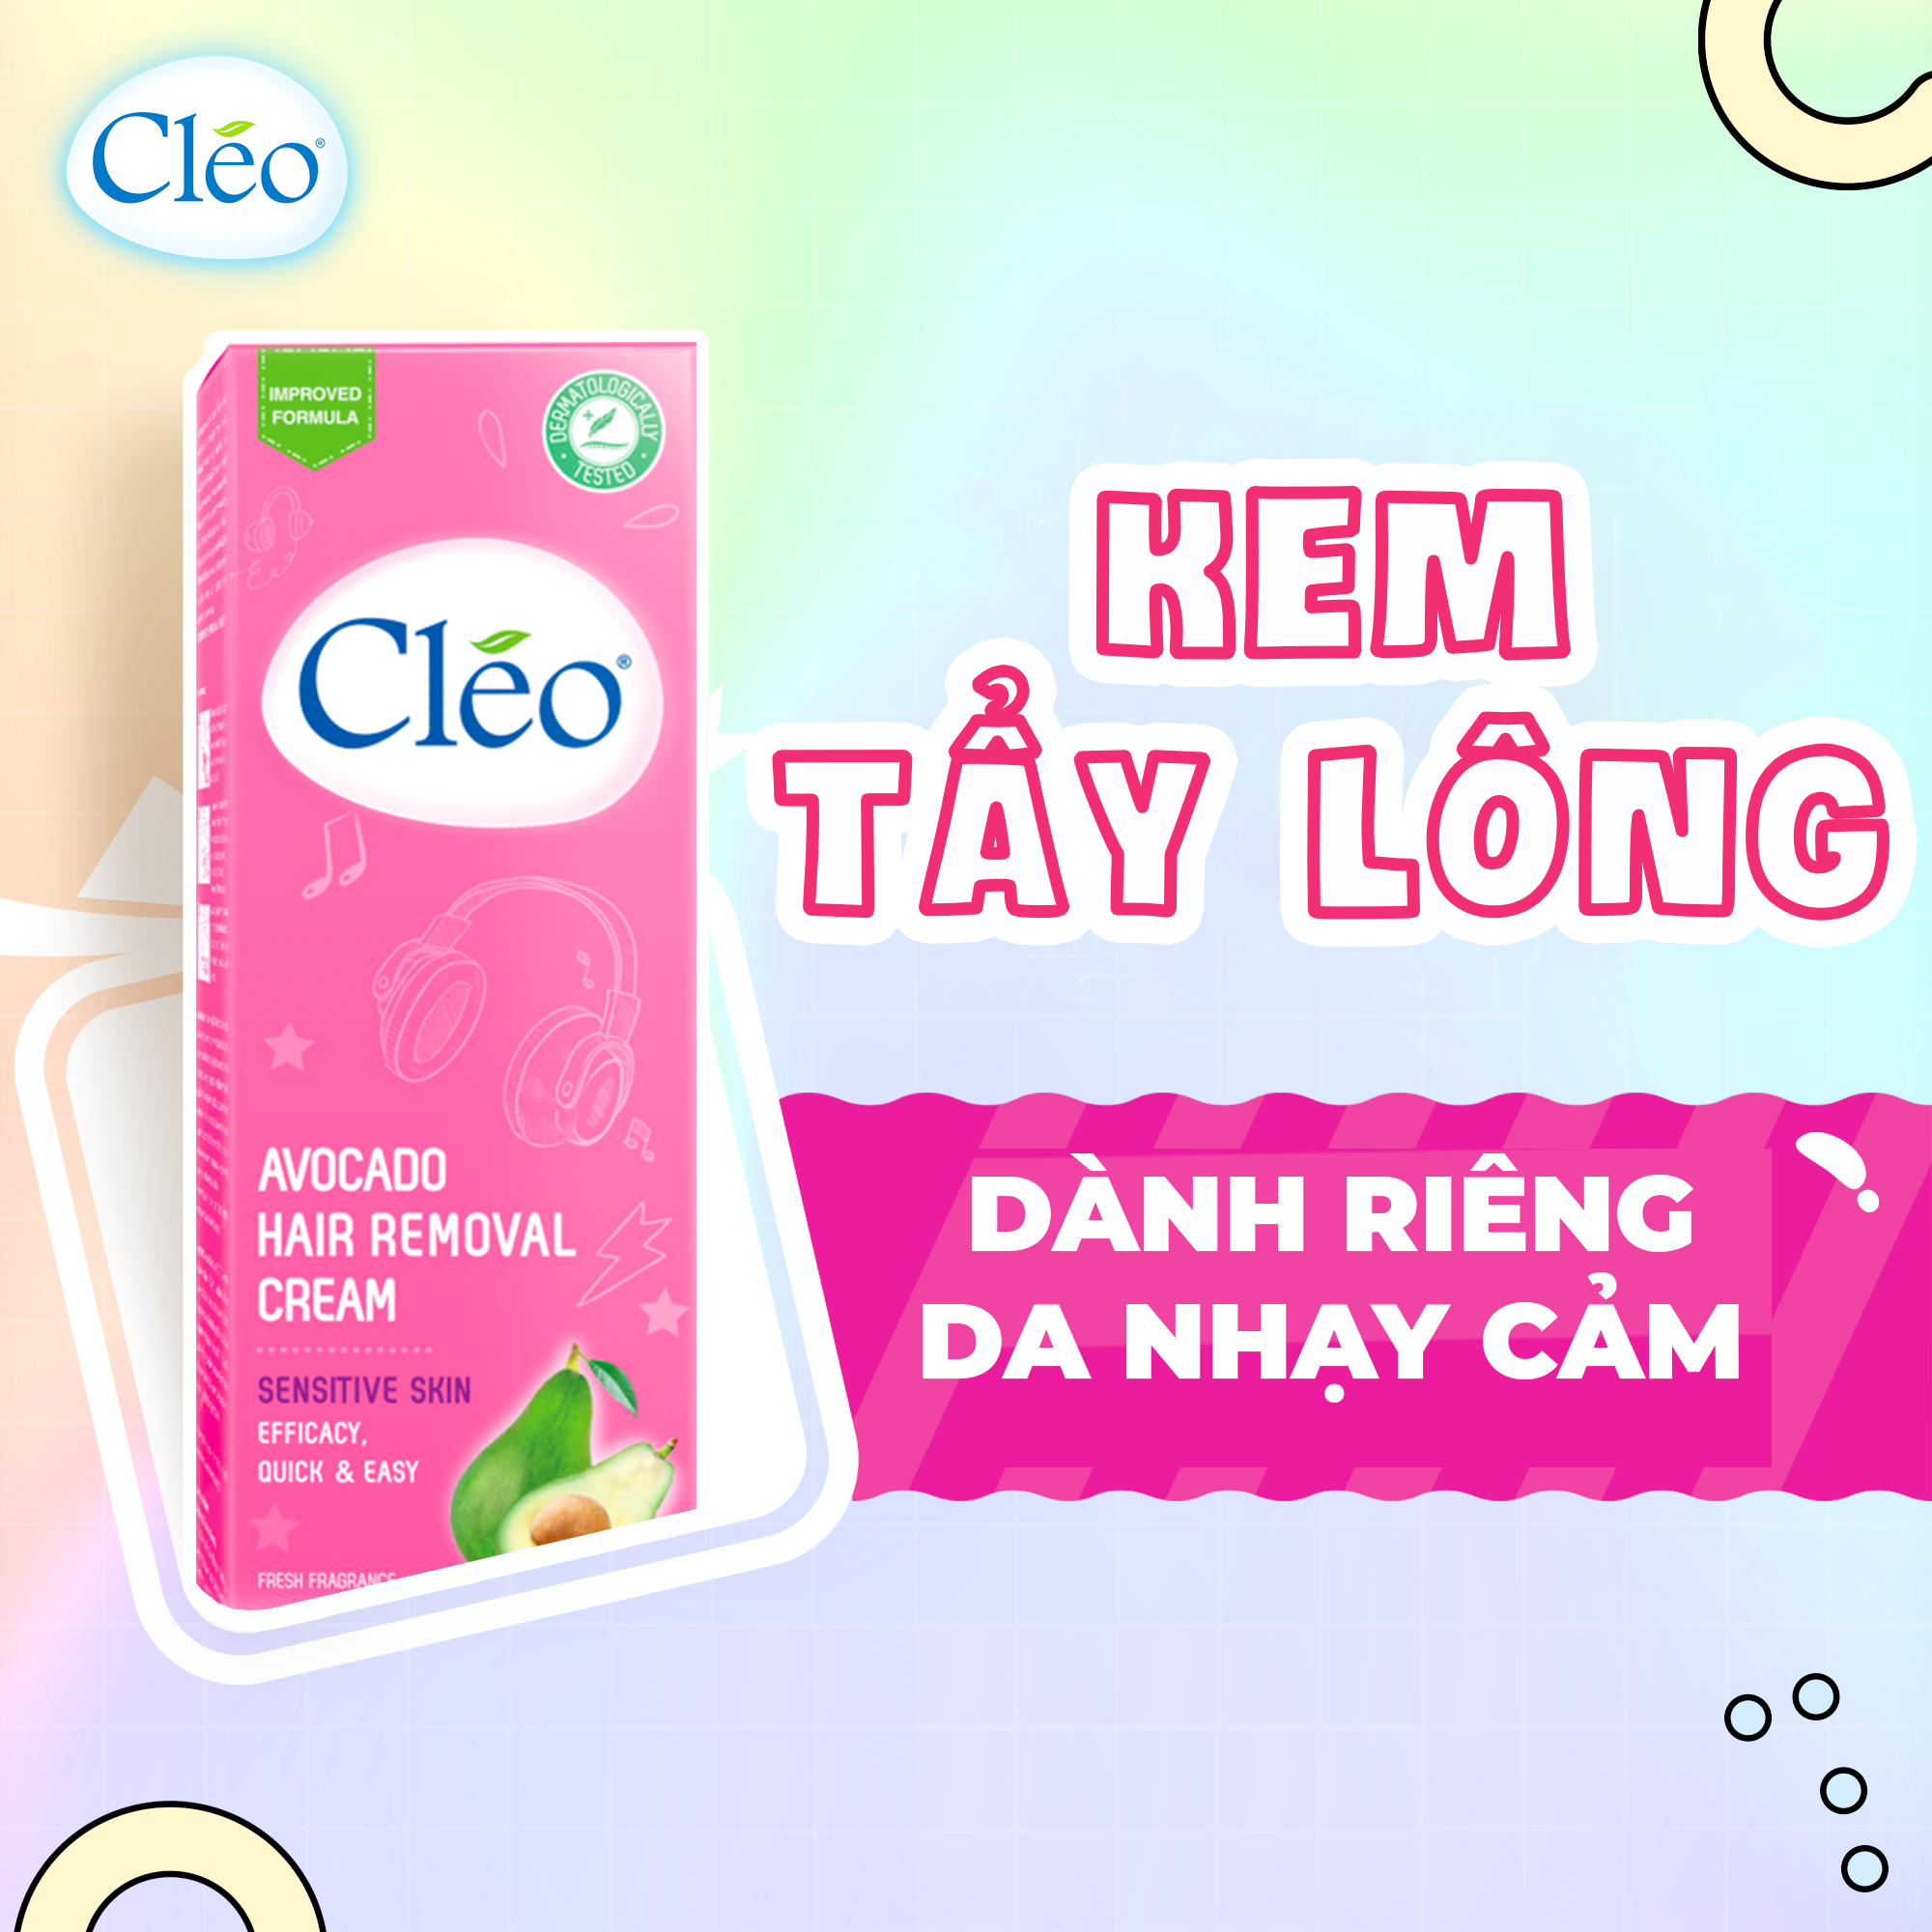 Kem tẩy lông Cleo - Bí quyết mịn màng cho làn da nhạy cảm